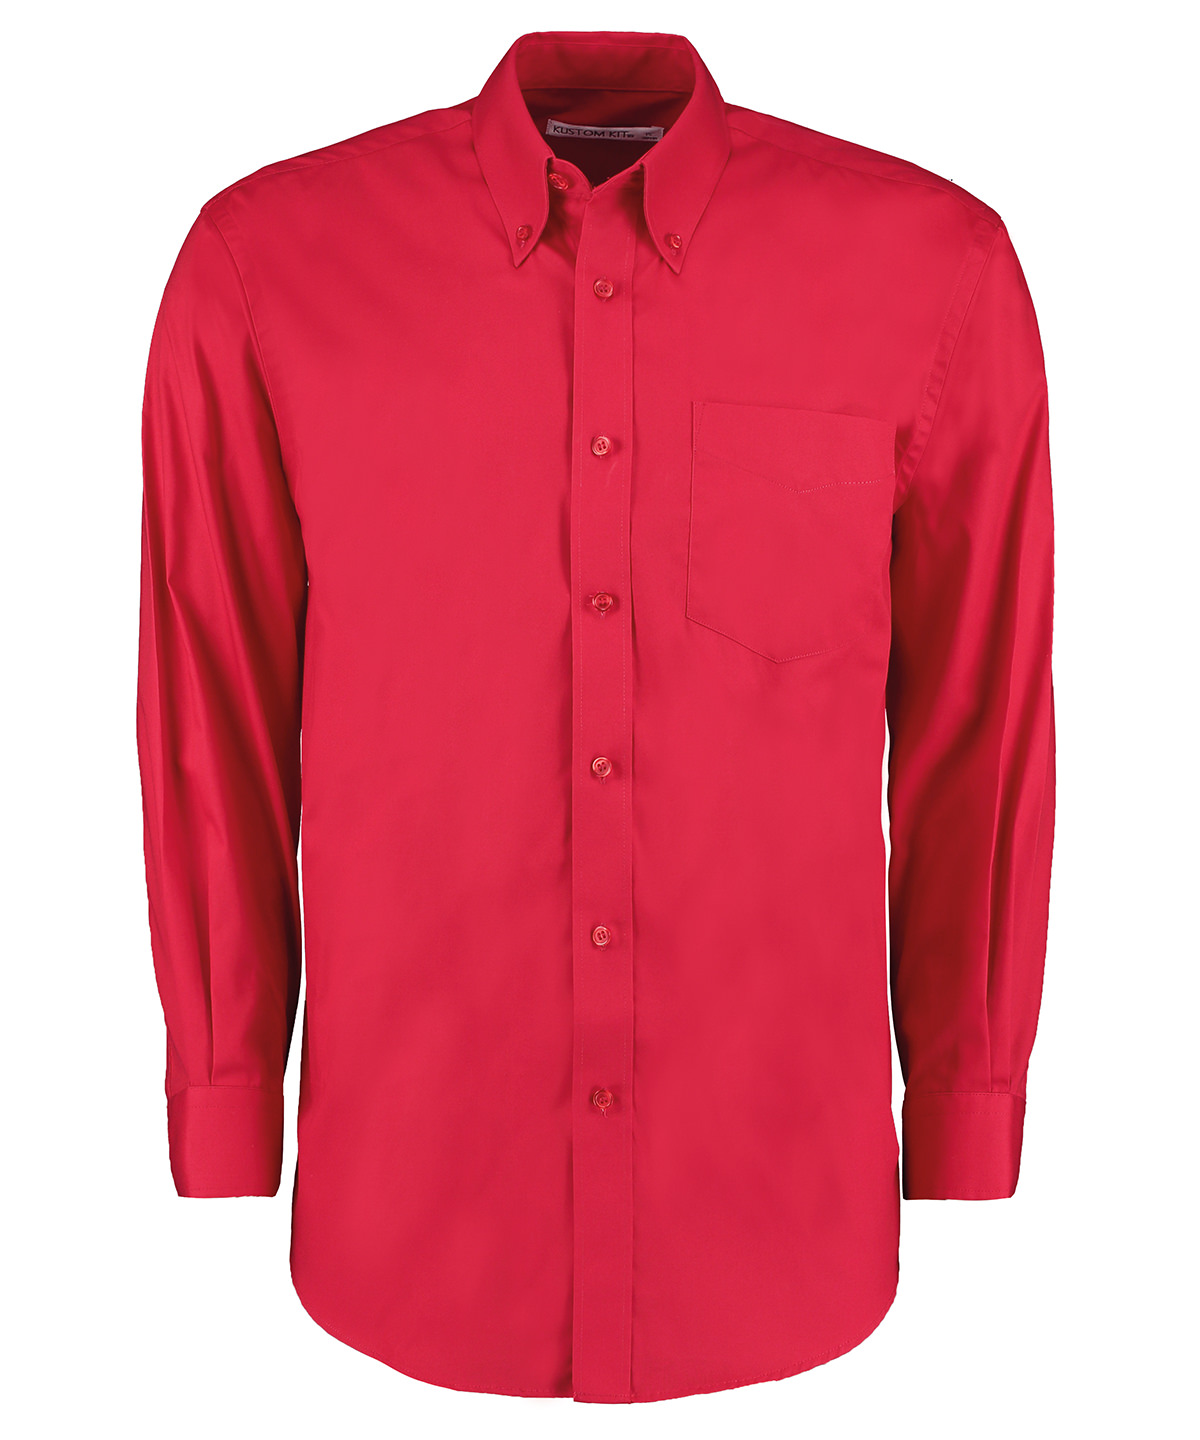 Men’s Oxford Shirt Long Sleeved-kk105_red